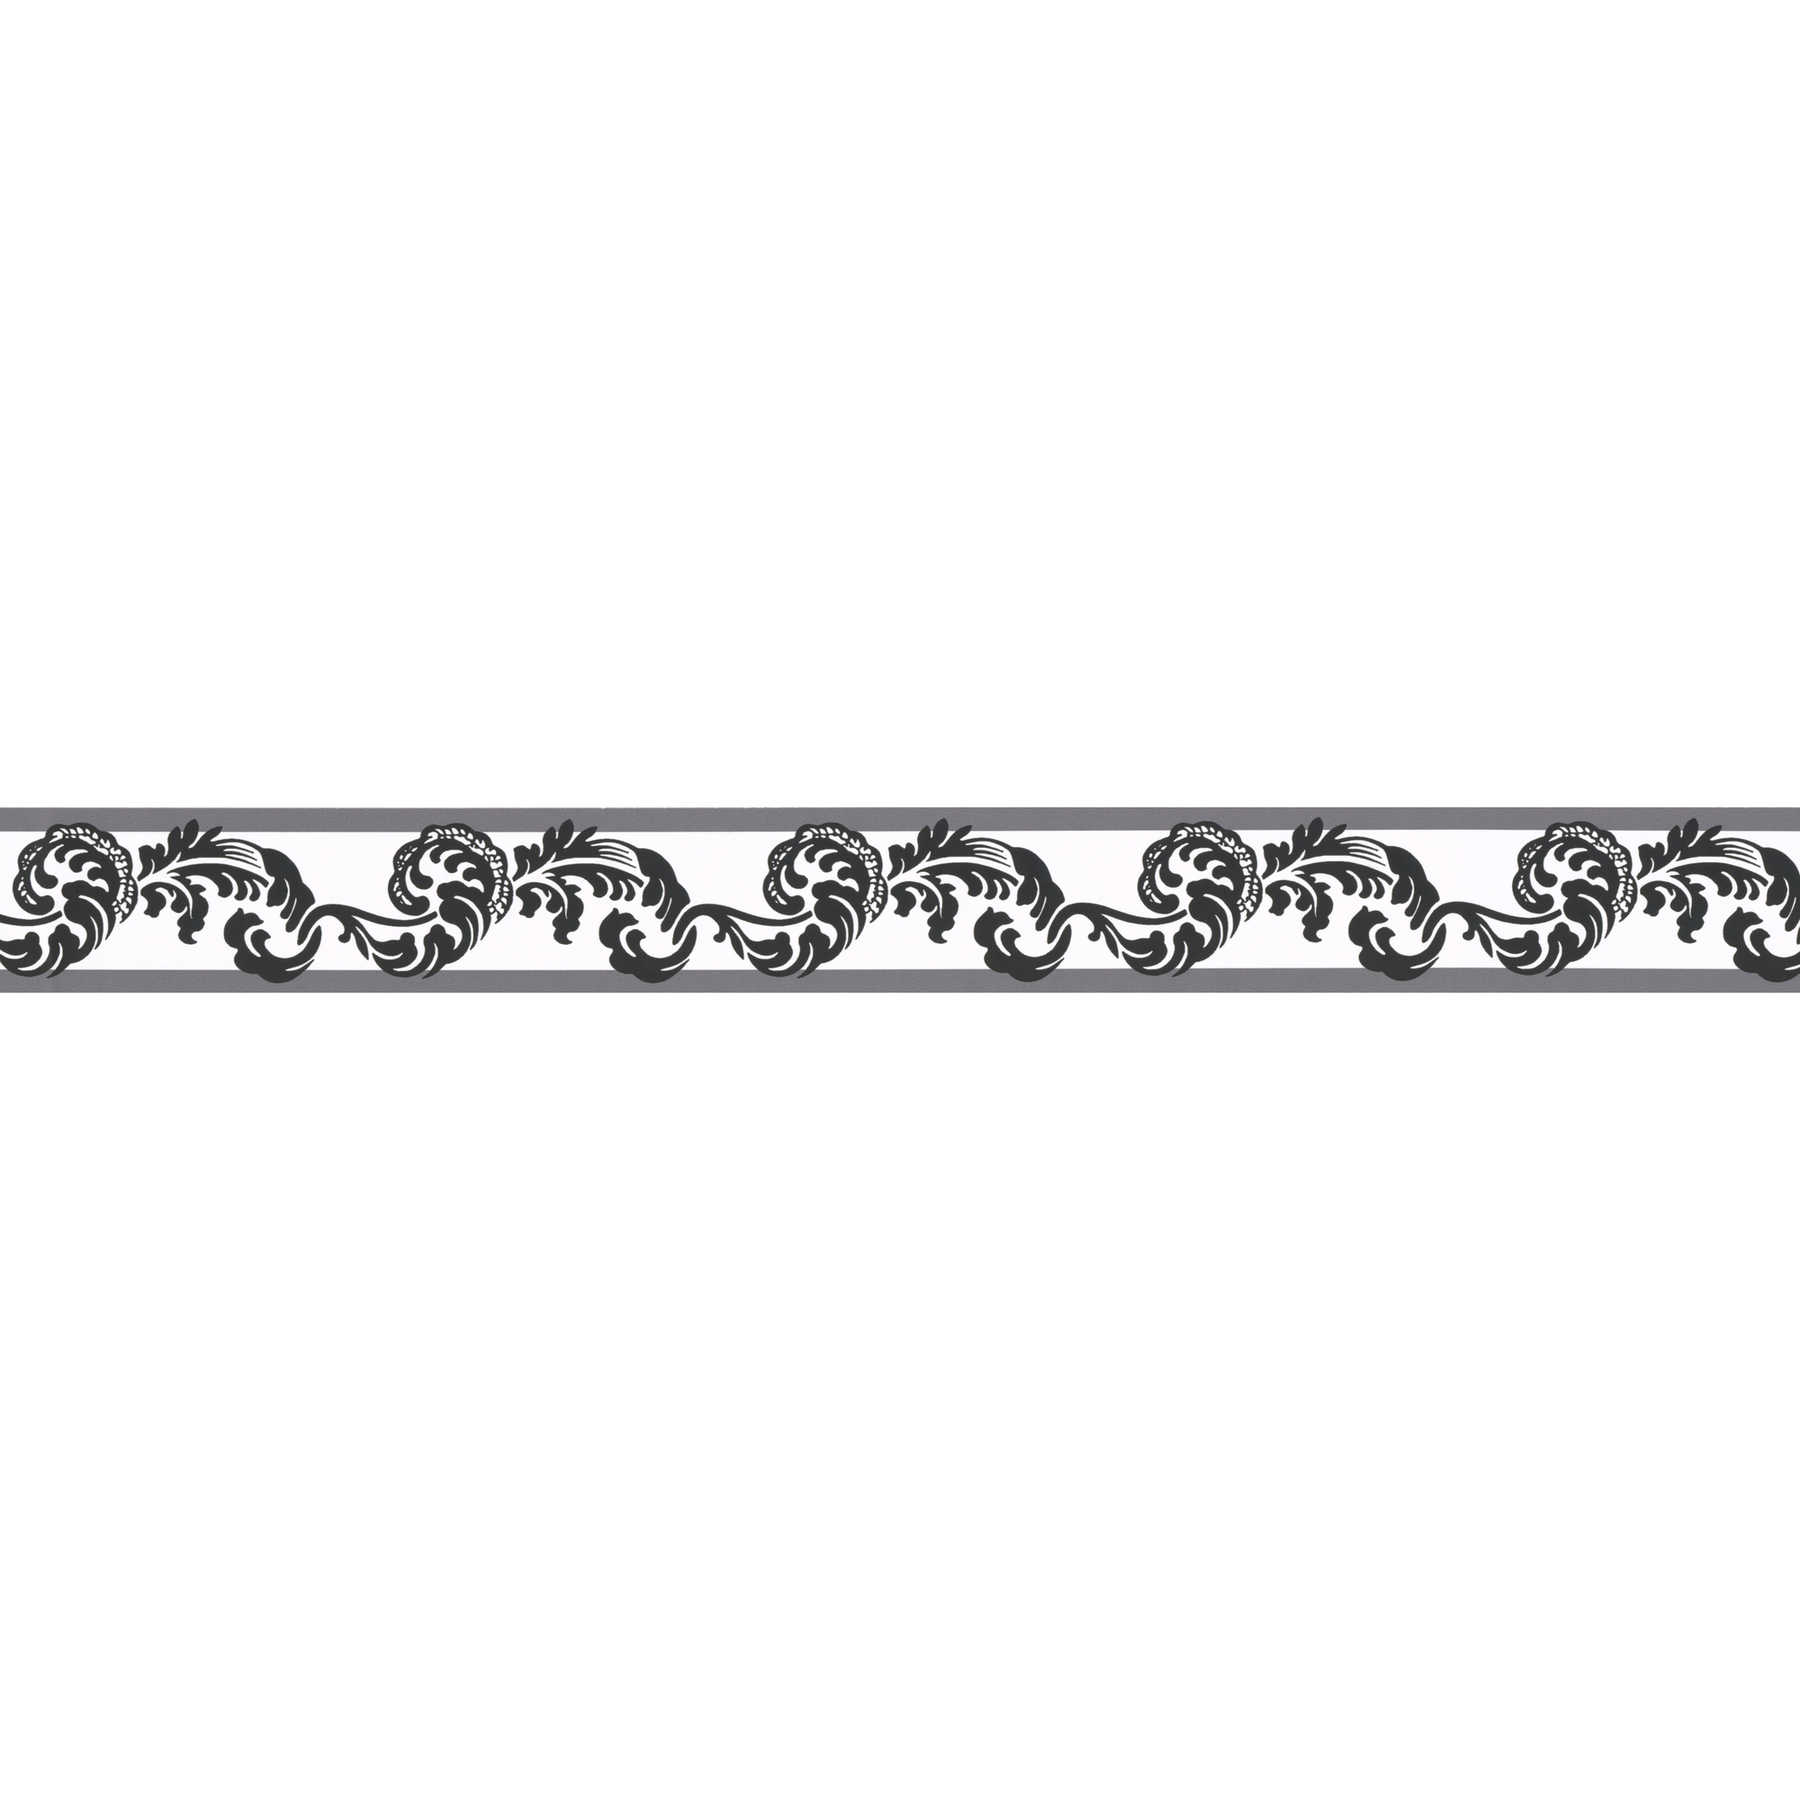         Schwarz-Weiß Tapetenbordüre mit Ornament Muster
    